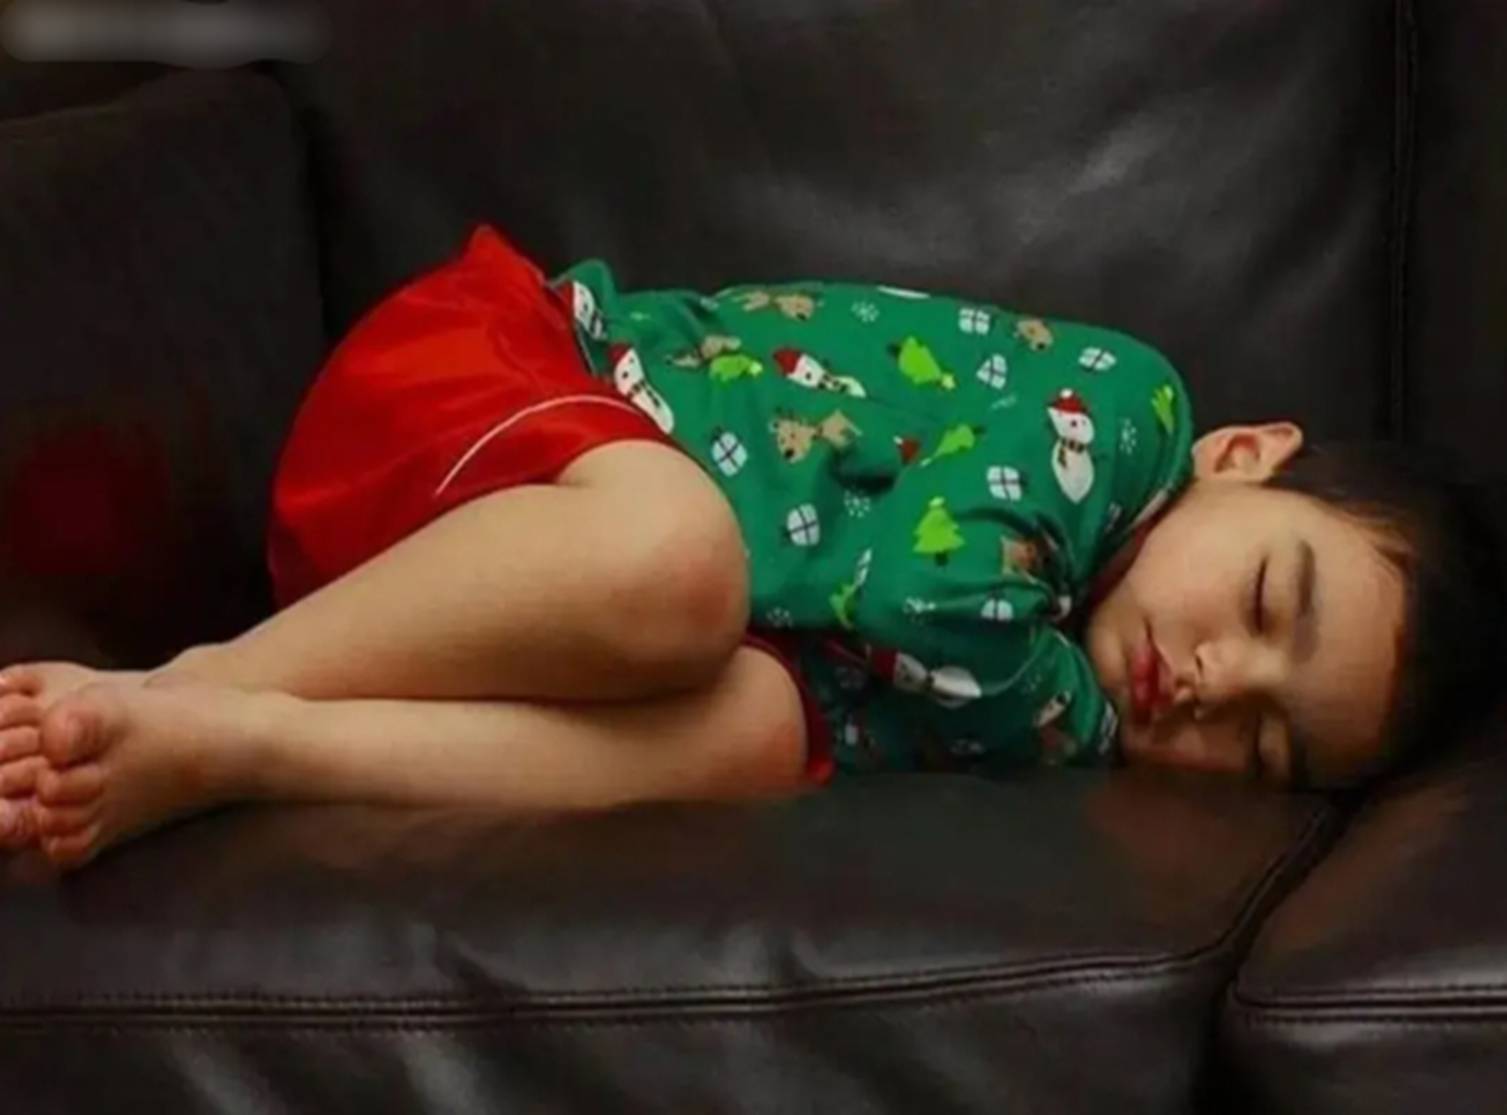 Nghiên cứu tâm lý phát hiện: Những đứa trẻ thông minh thường ngủ tư thế này ngay từ nhỏ-4